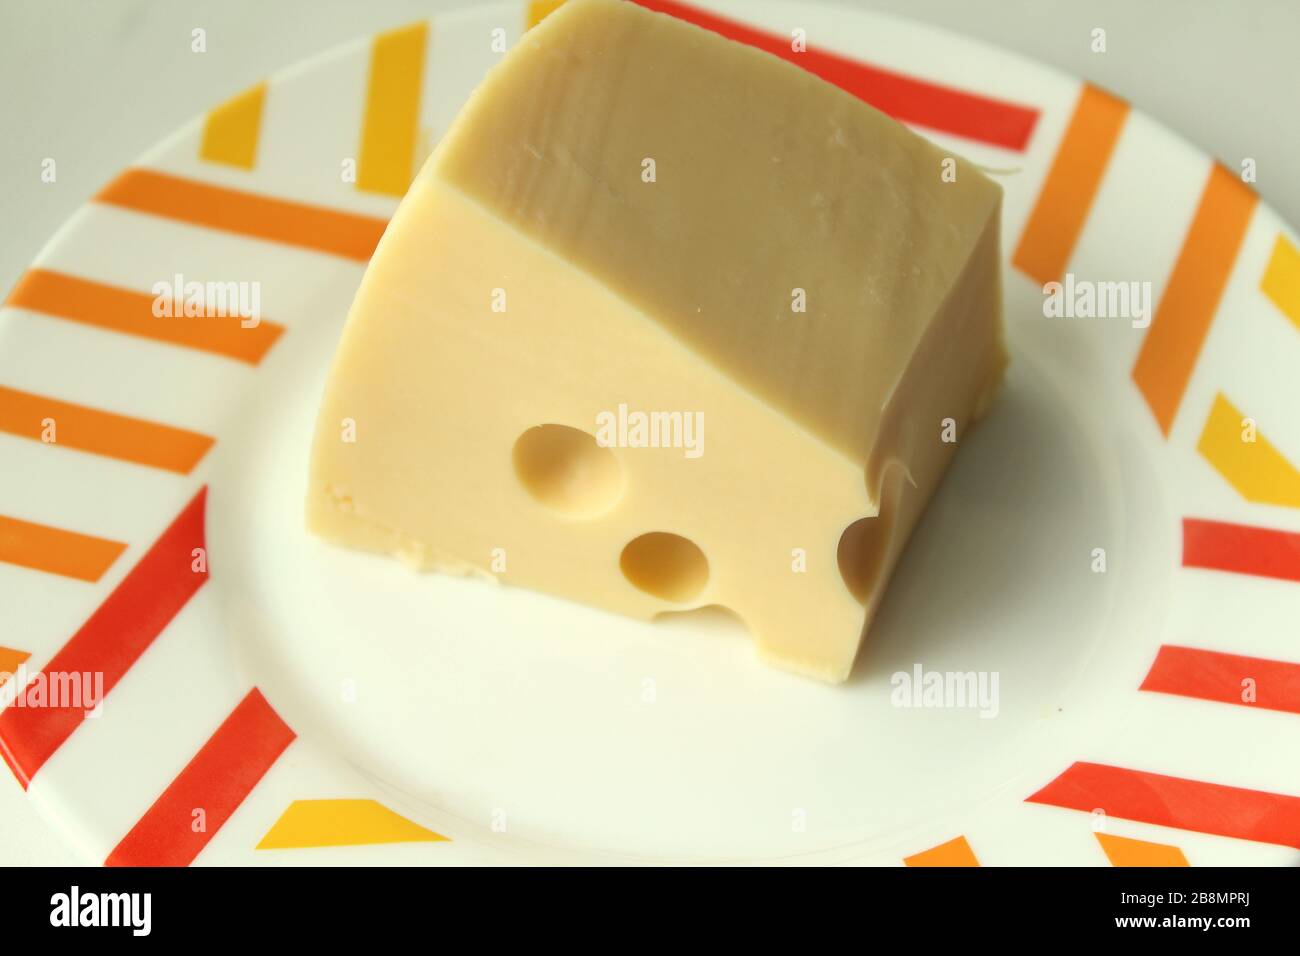 Un pezzo di formaggio giallo con buchi giace su un piatto bianco con un bordo colorato. Foto Stock